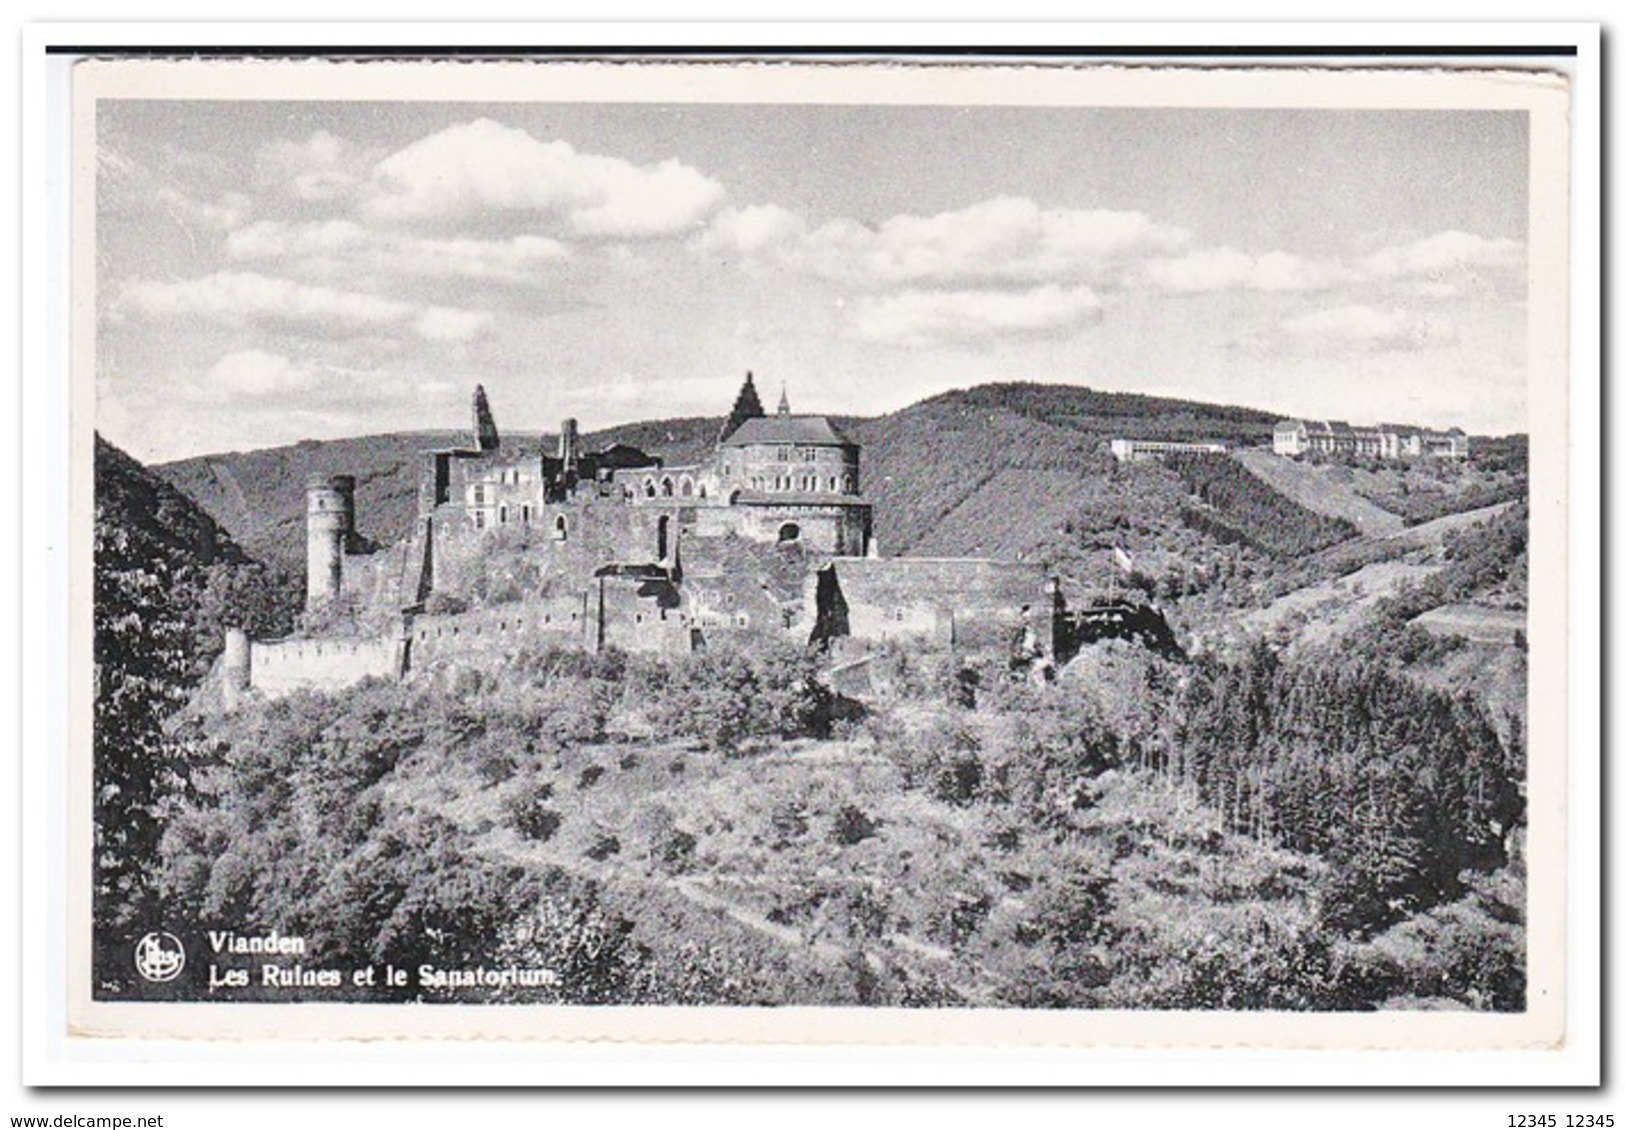 Vianden, Les Ruines Et Le Sanatorium - Vianden